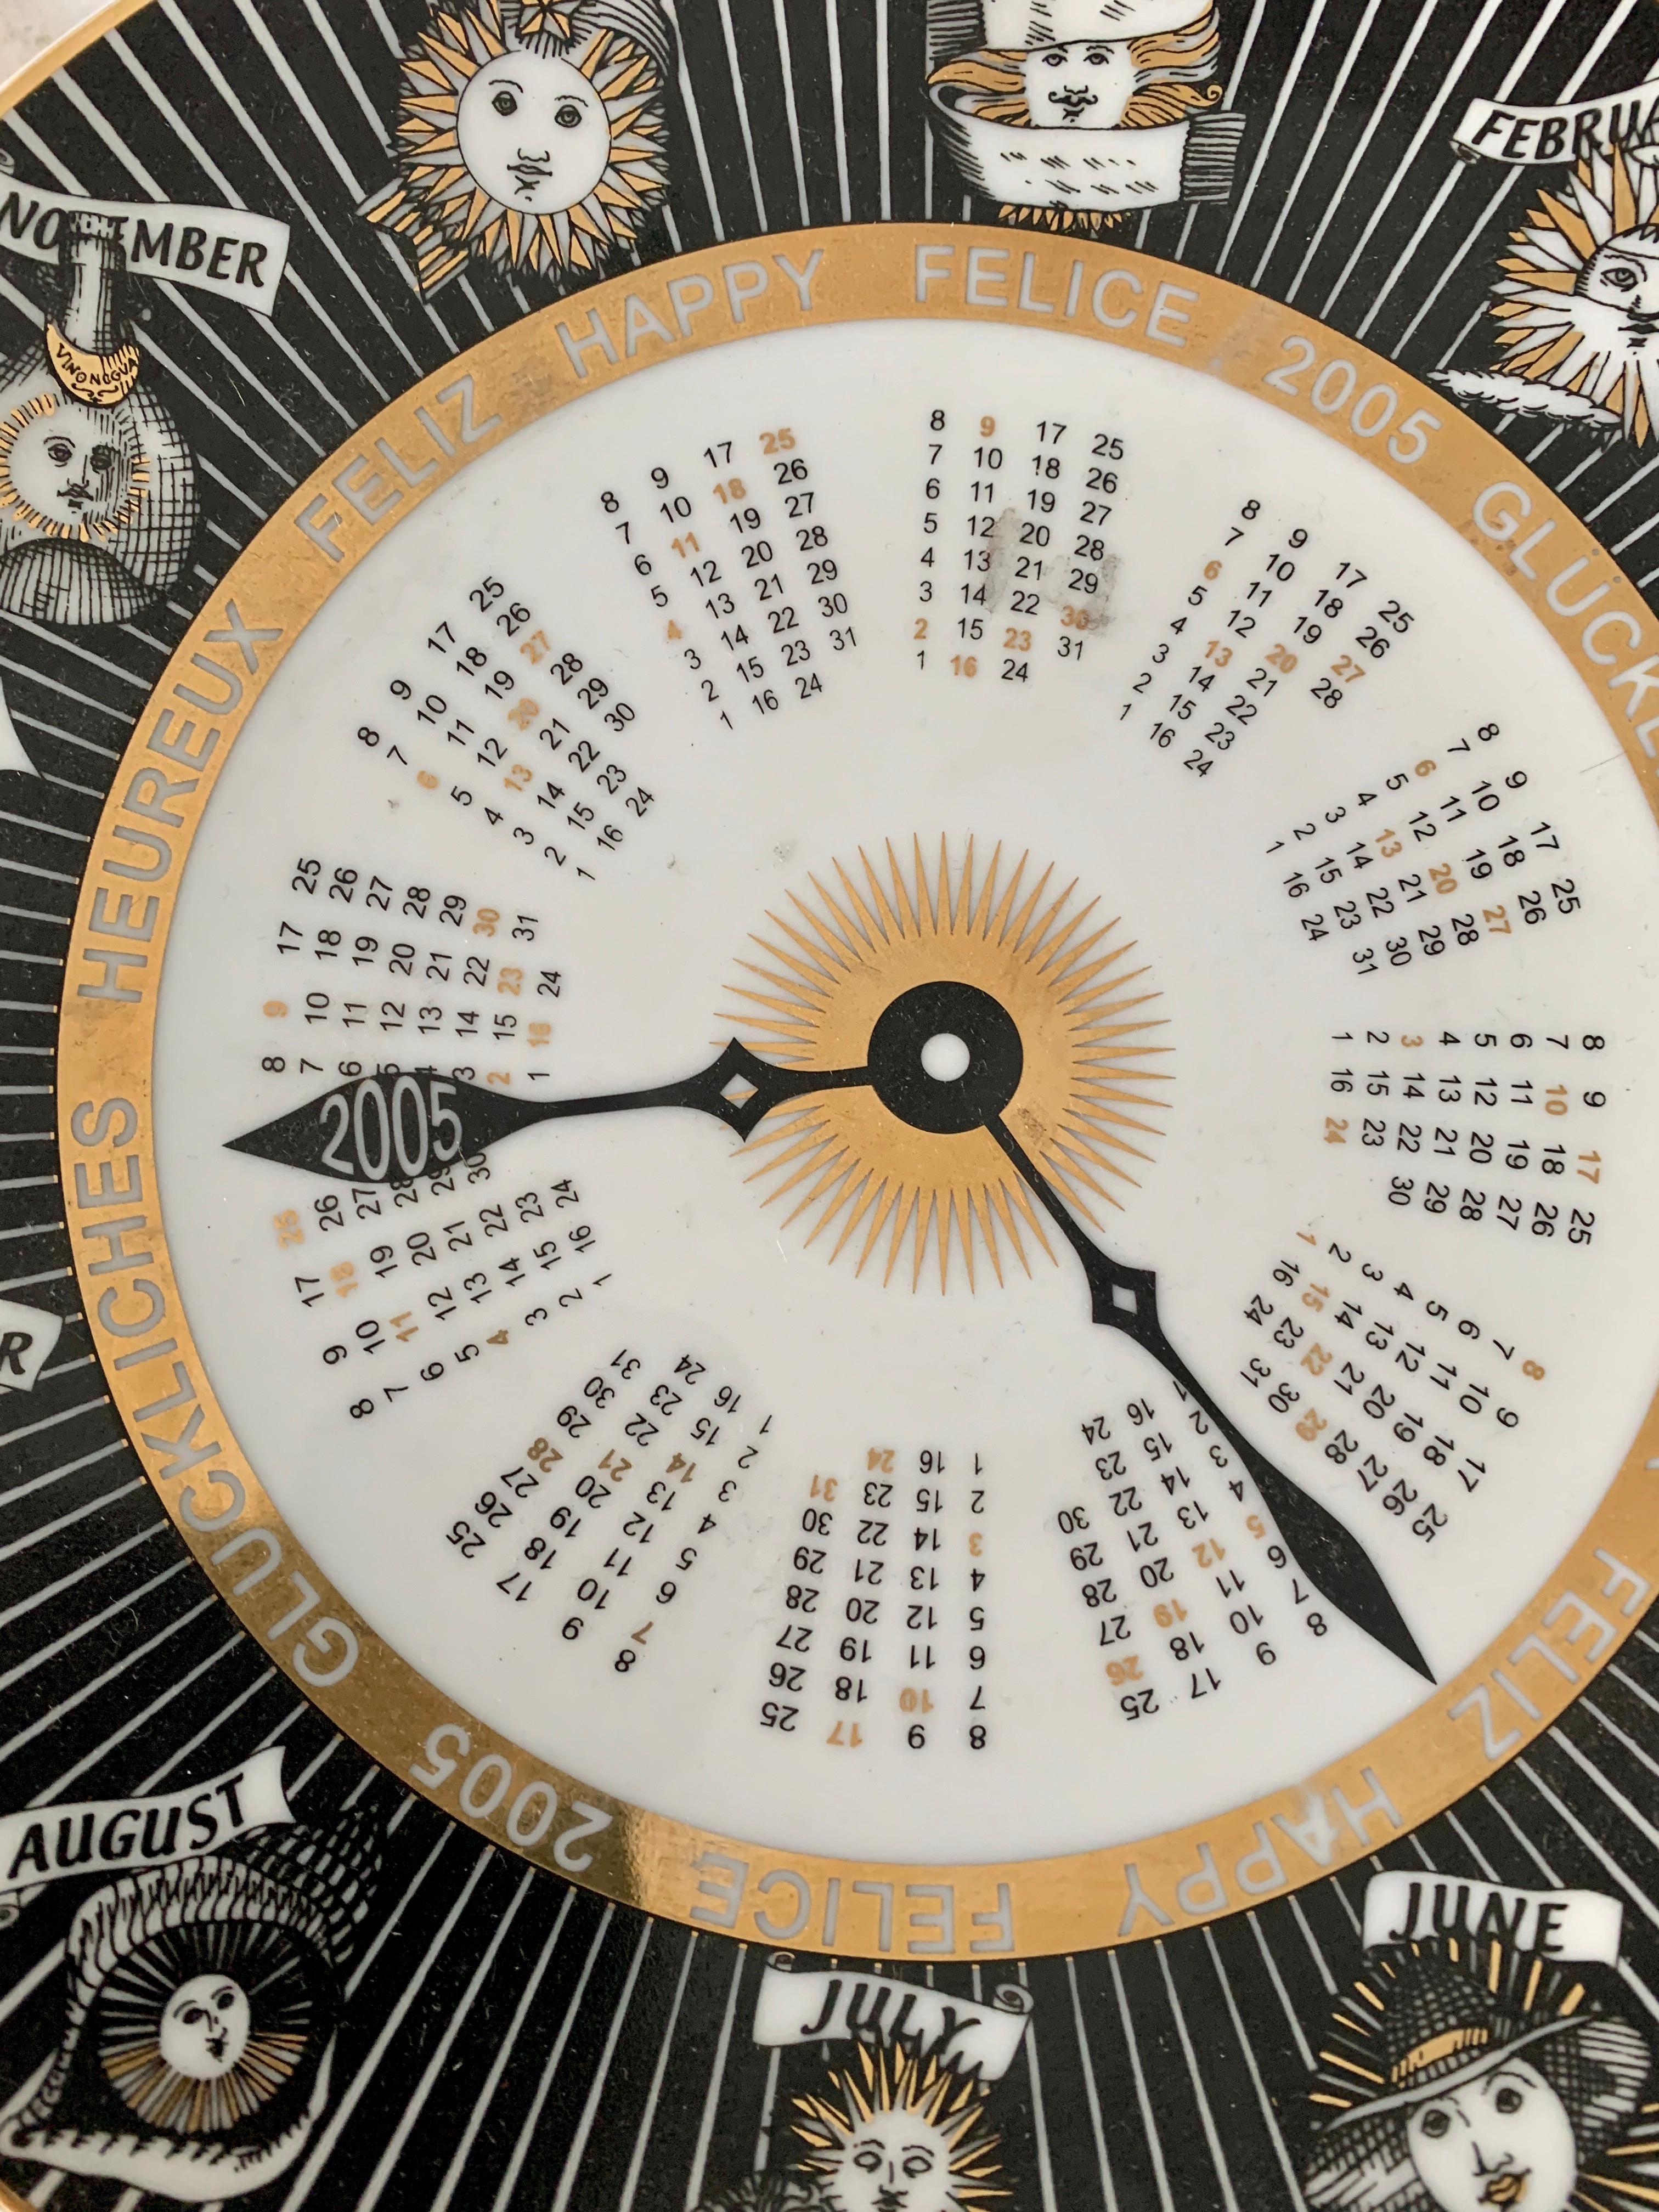 Paar italienische Fornasetti signiert und nummeriert Kalender astrologischen Platten - die Platten sind Classic Piero Fornasetti - Ein wunderbares Design, das alle 12 Horoskope und Kalender. Jede Platte hat vorgebohrte Löcher zum Aufhängen.